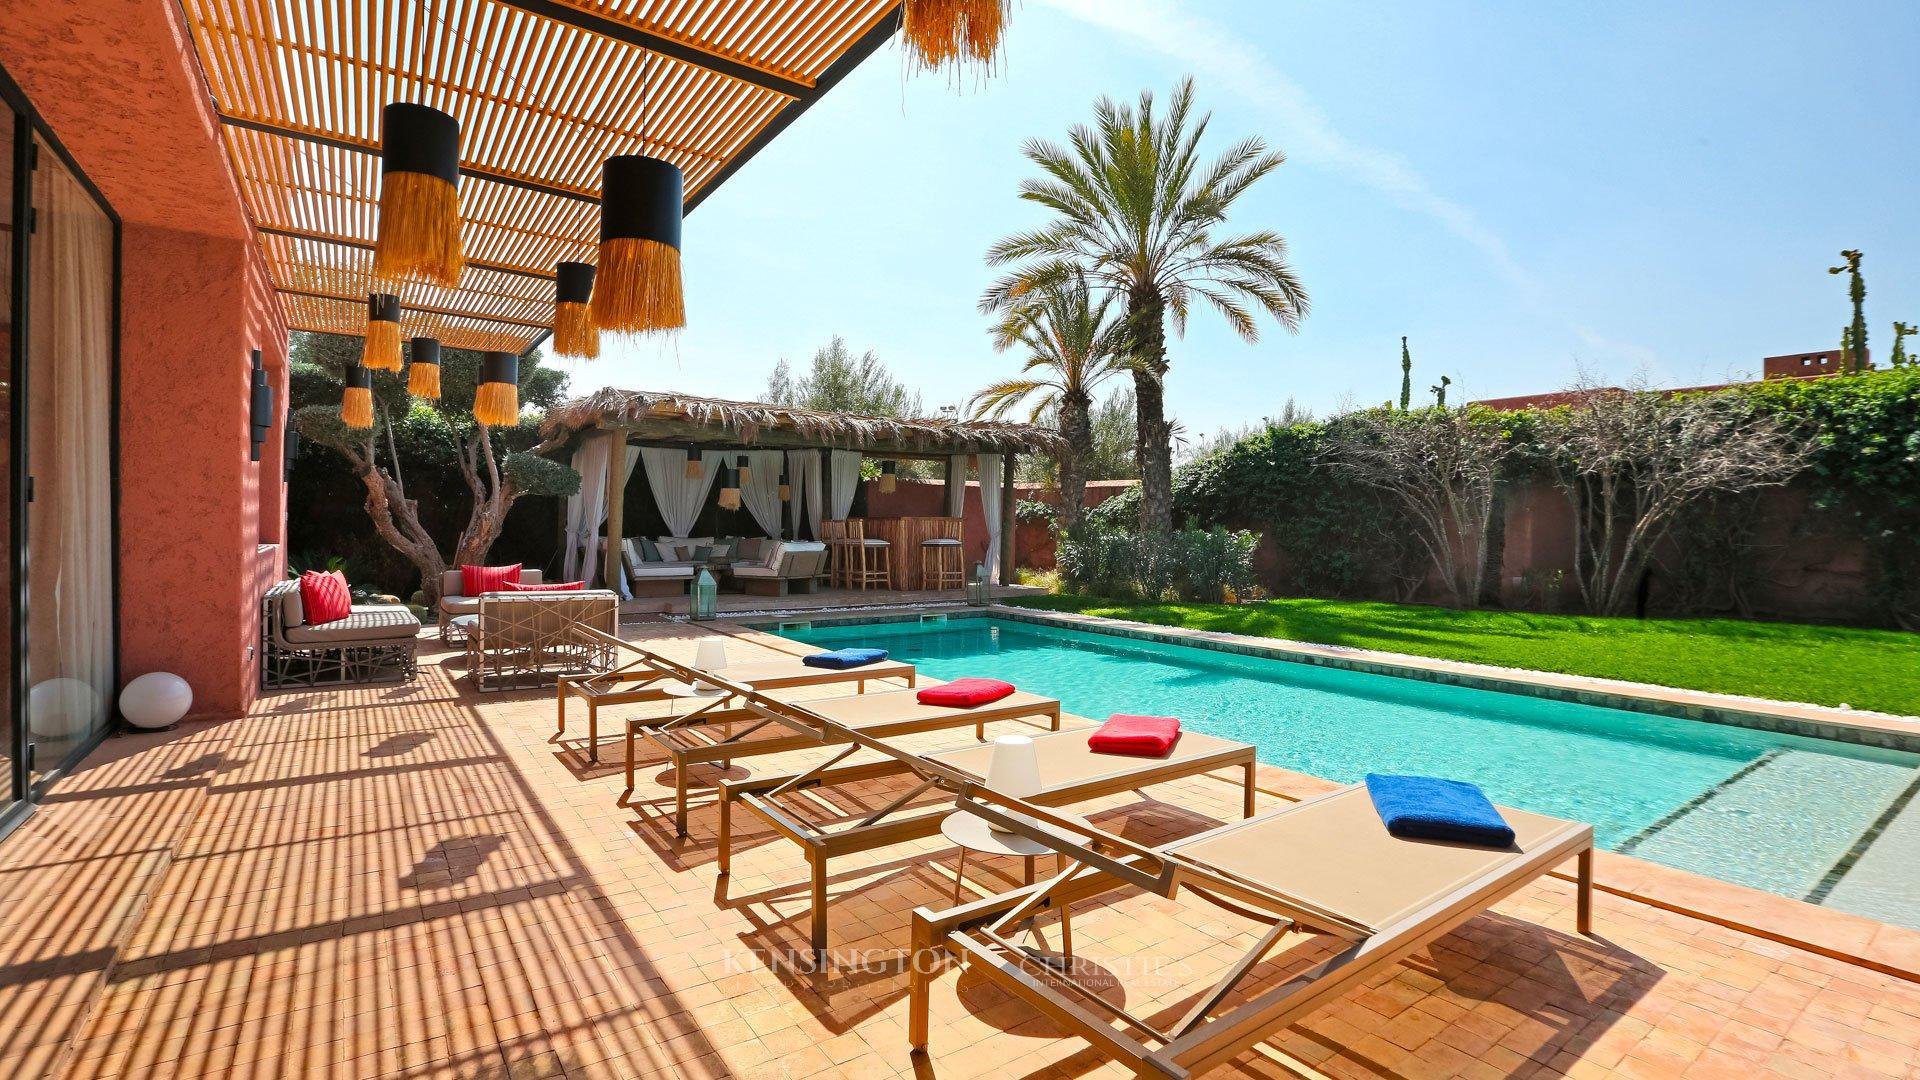 Villa Keva in Marrakech